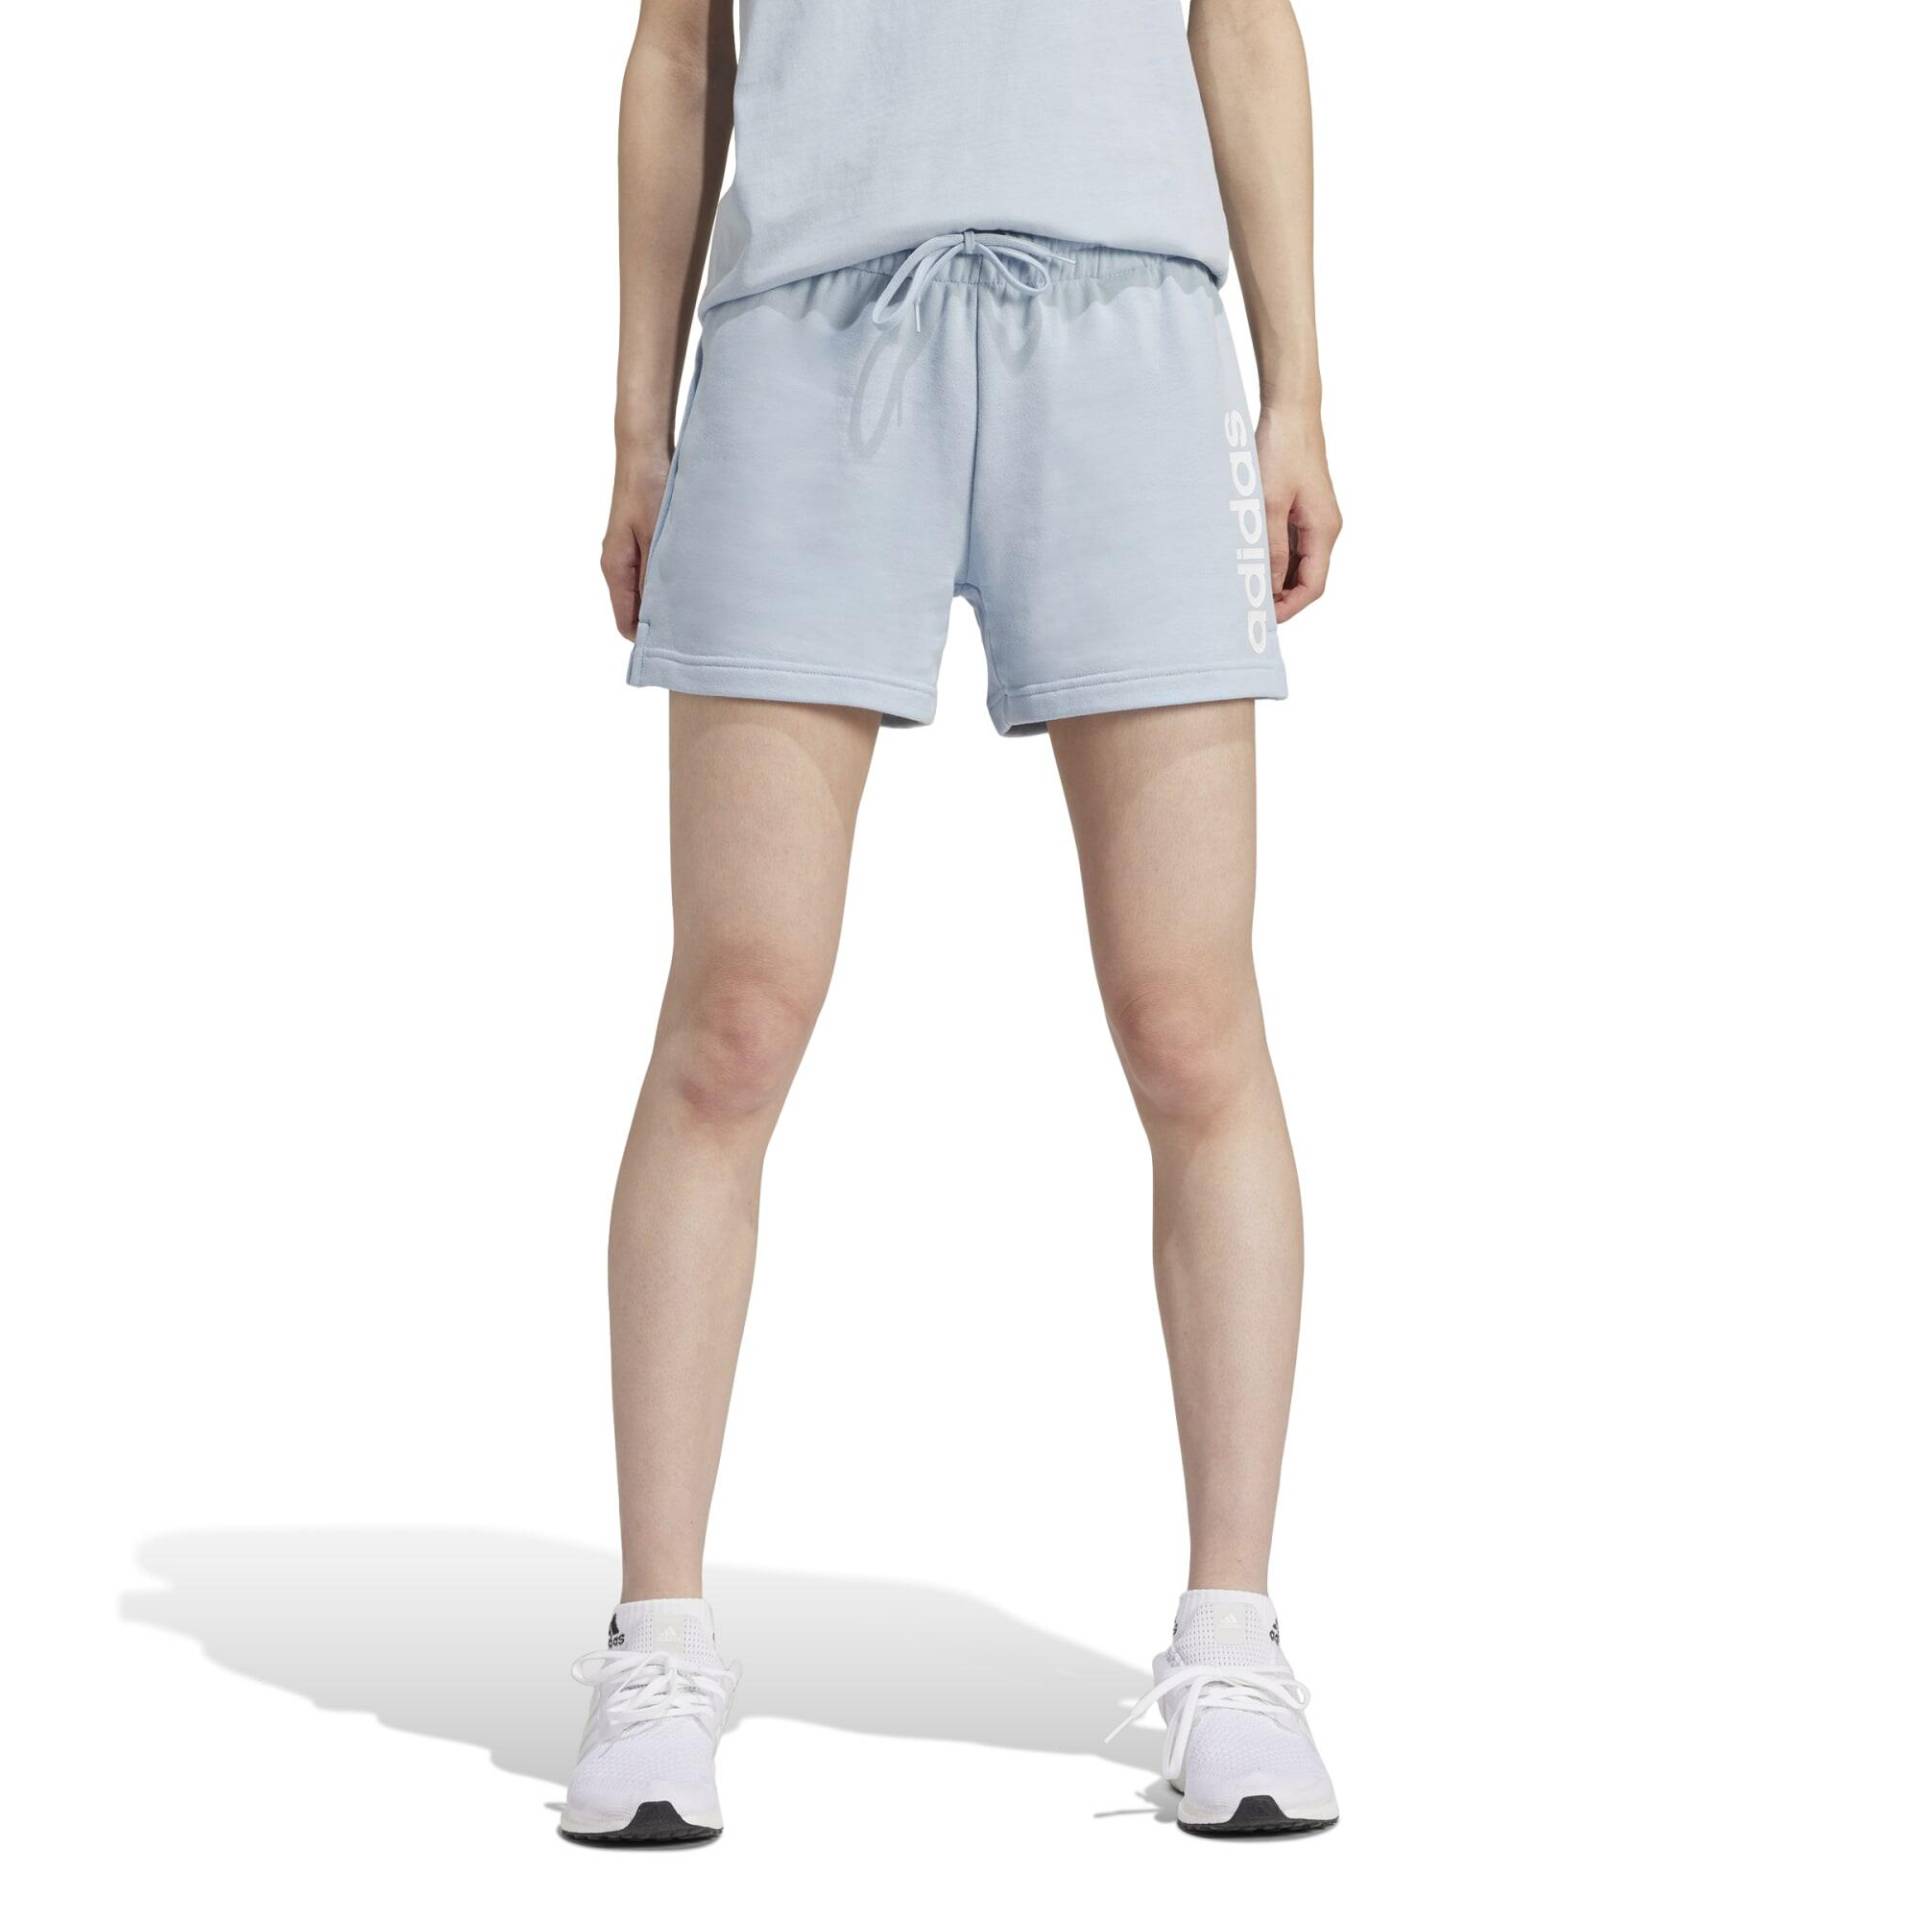 ADIDAS Shorts Damen weich - blau von Adidas